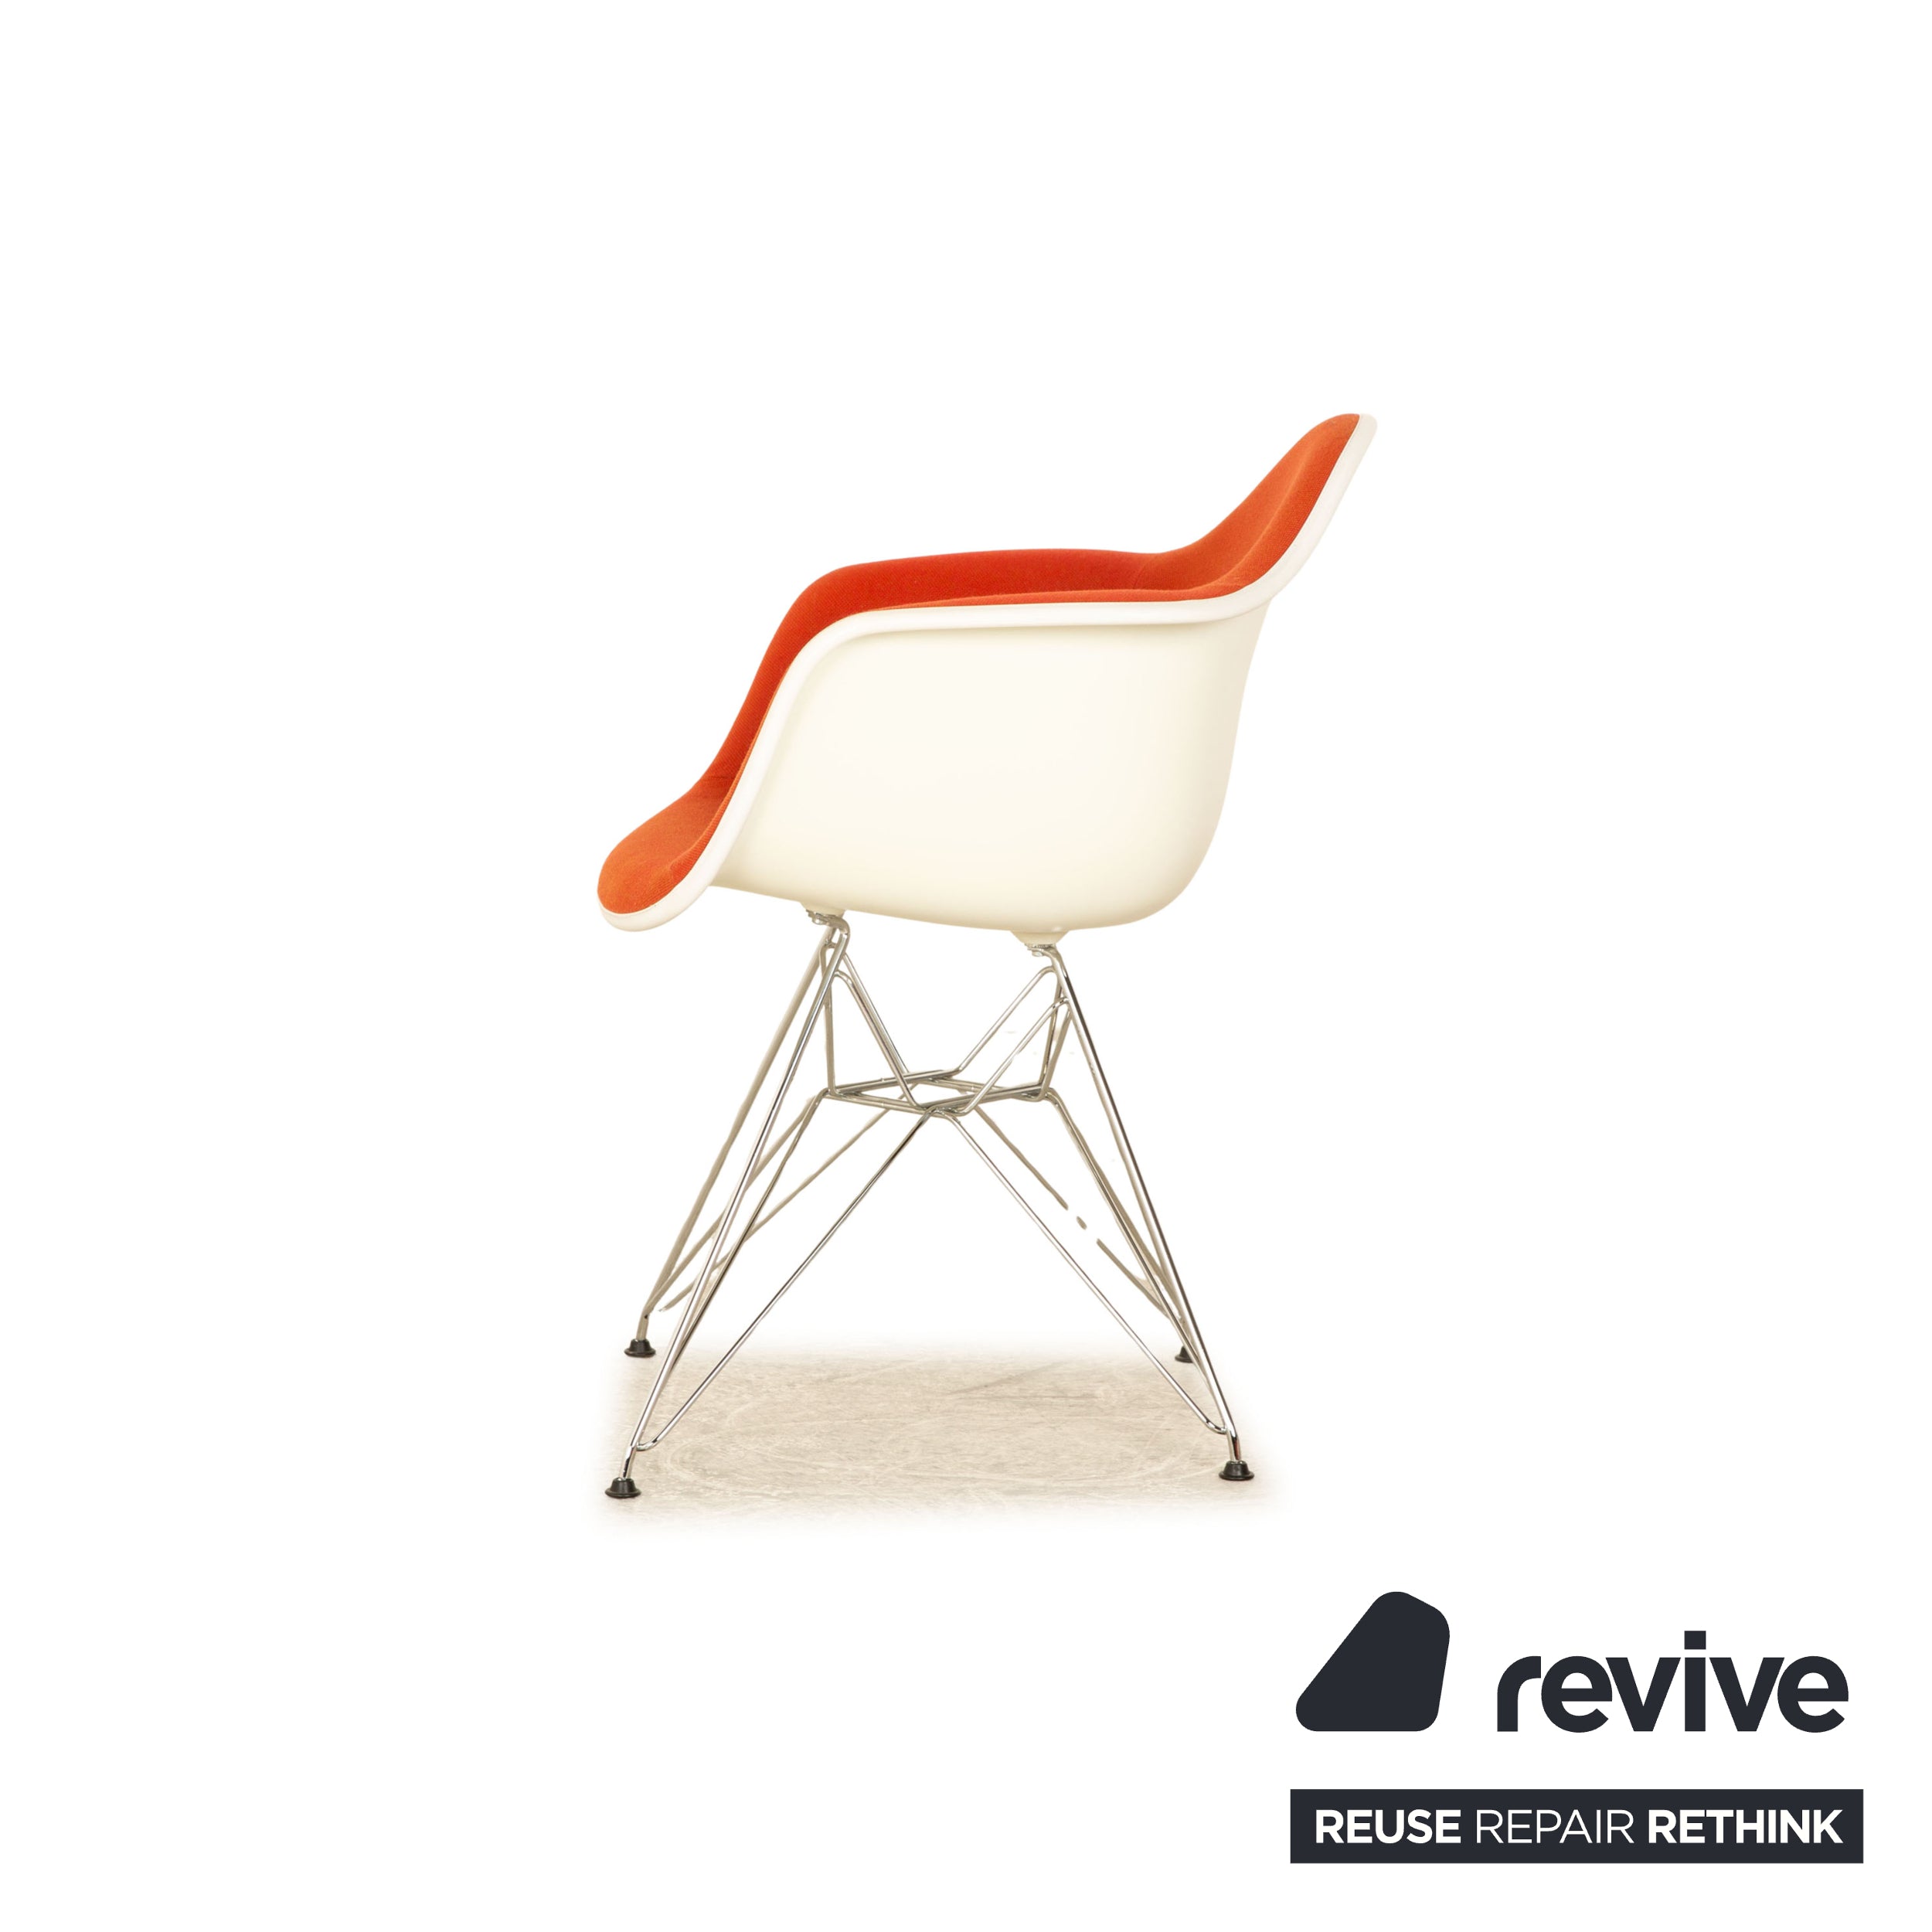 4er Garnitur Vitra Eames Plastic Armchair Stoff Stuhl Rot Orange Weiß Esszimmer